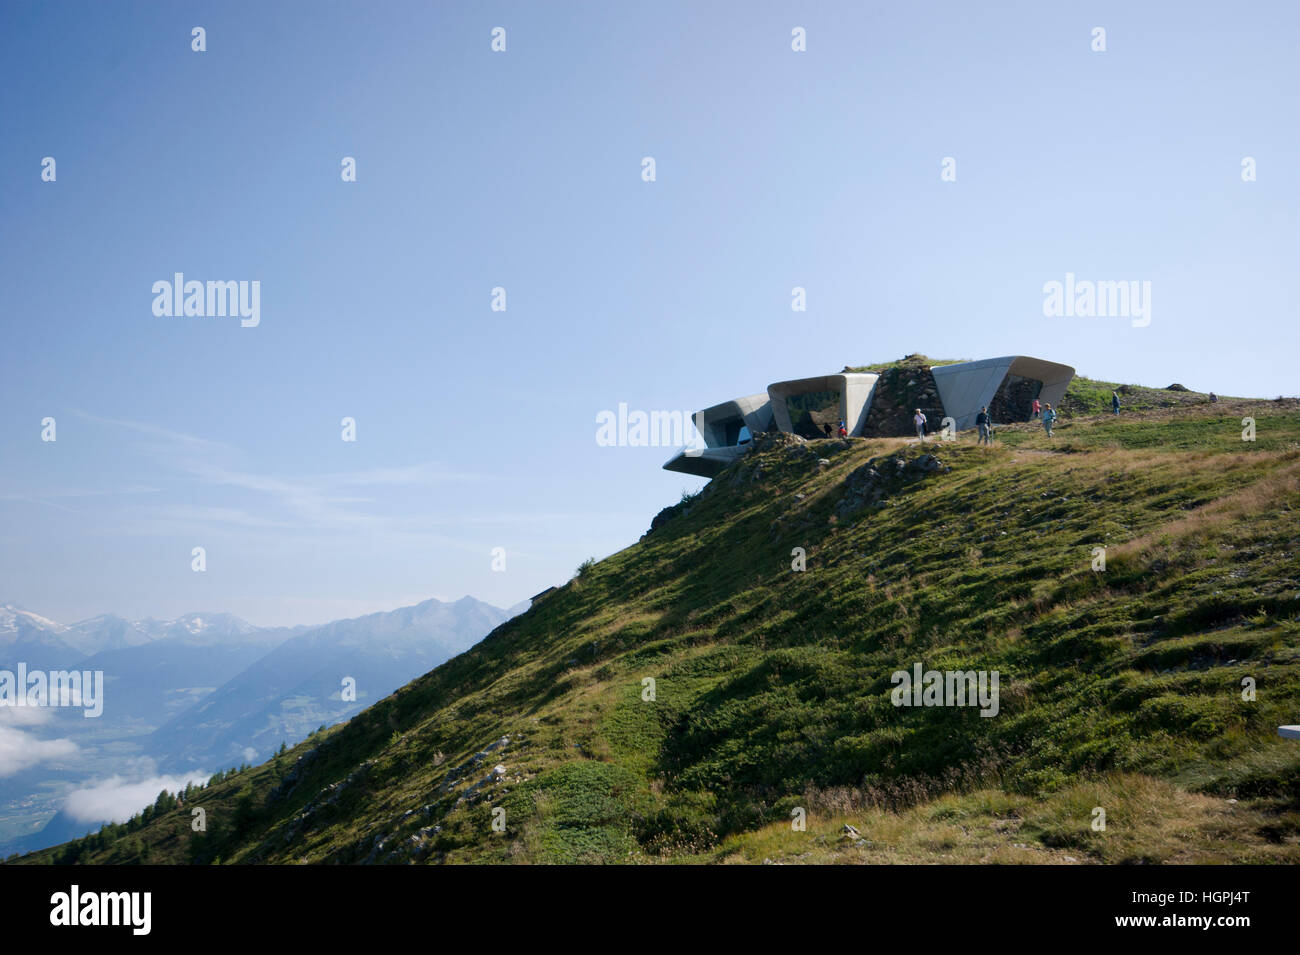 Il Messner Corones Mountain Museo progettato da Zaha Hadid Architects sulla sommità del picco di Plan de Corones in Alto Adige Alpi, Italia Foto Stock